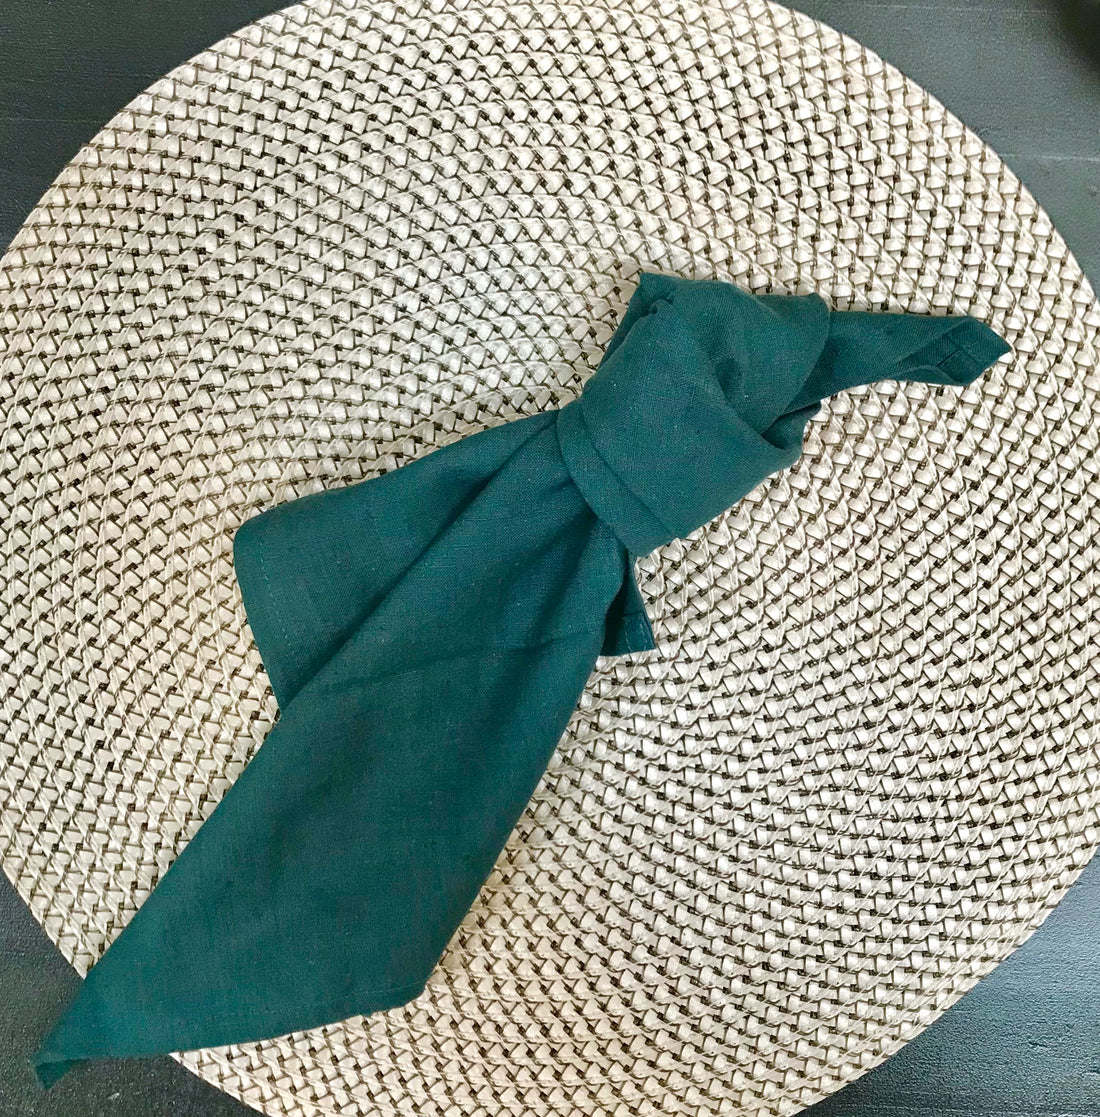 NEUE FARBE ! Serviette aus Baumwolle in Farbe DARK PETROL